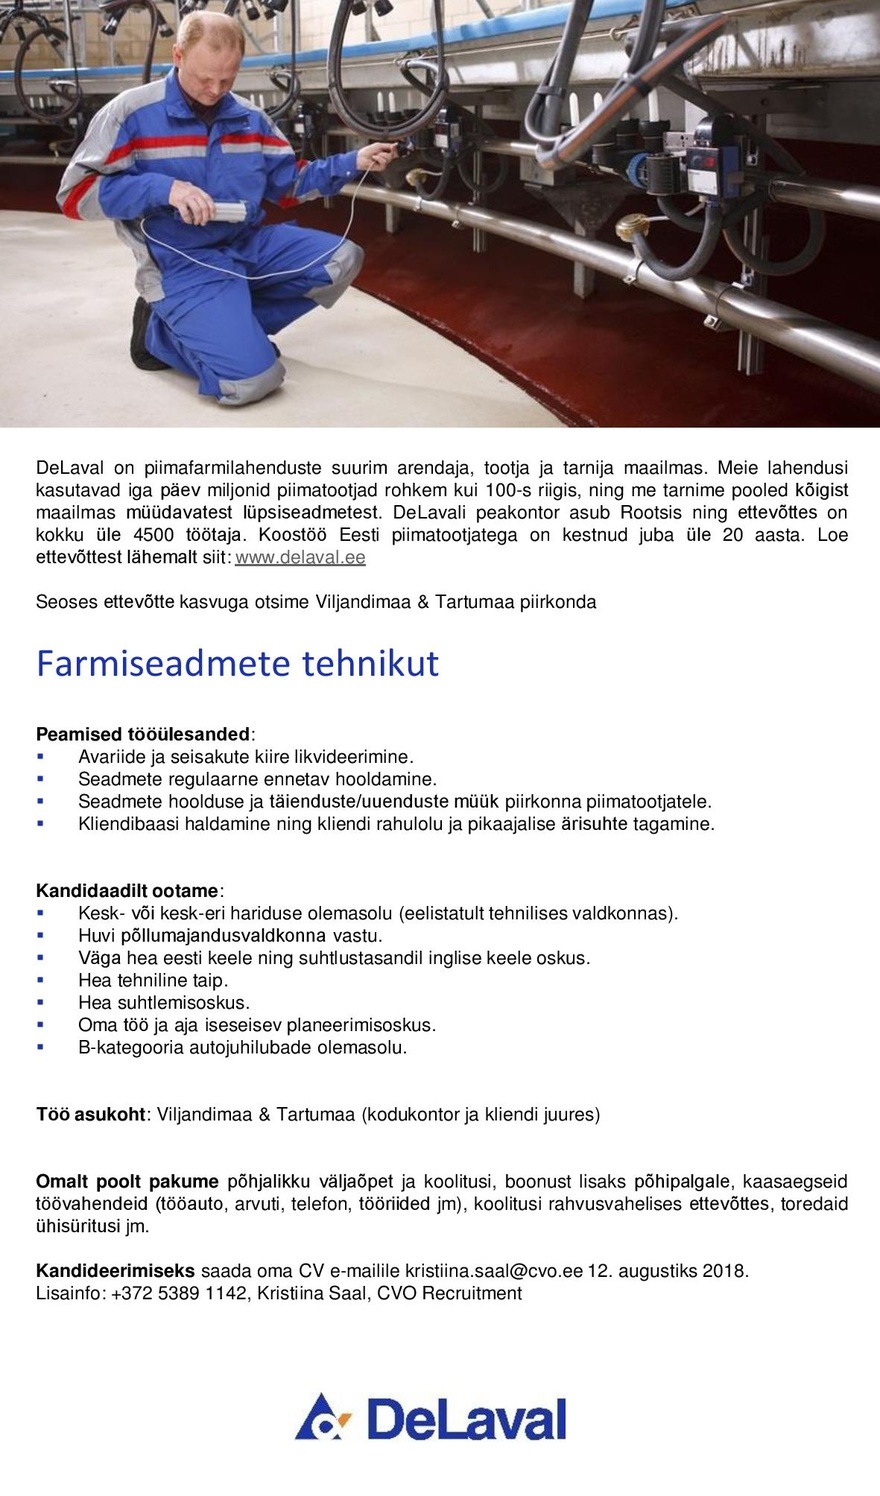 DeLaval OÜ Farmiseadmete tehnik (Viljandimaa & Tartumaa)